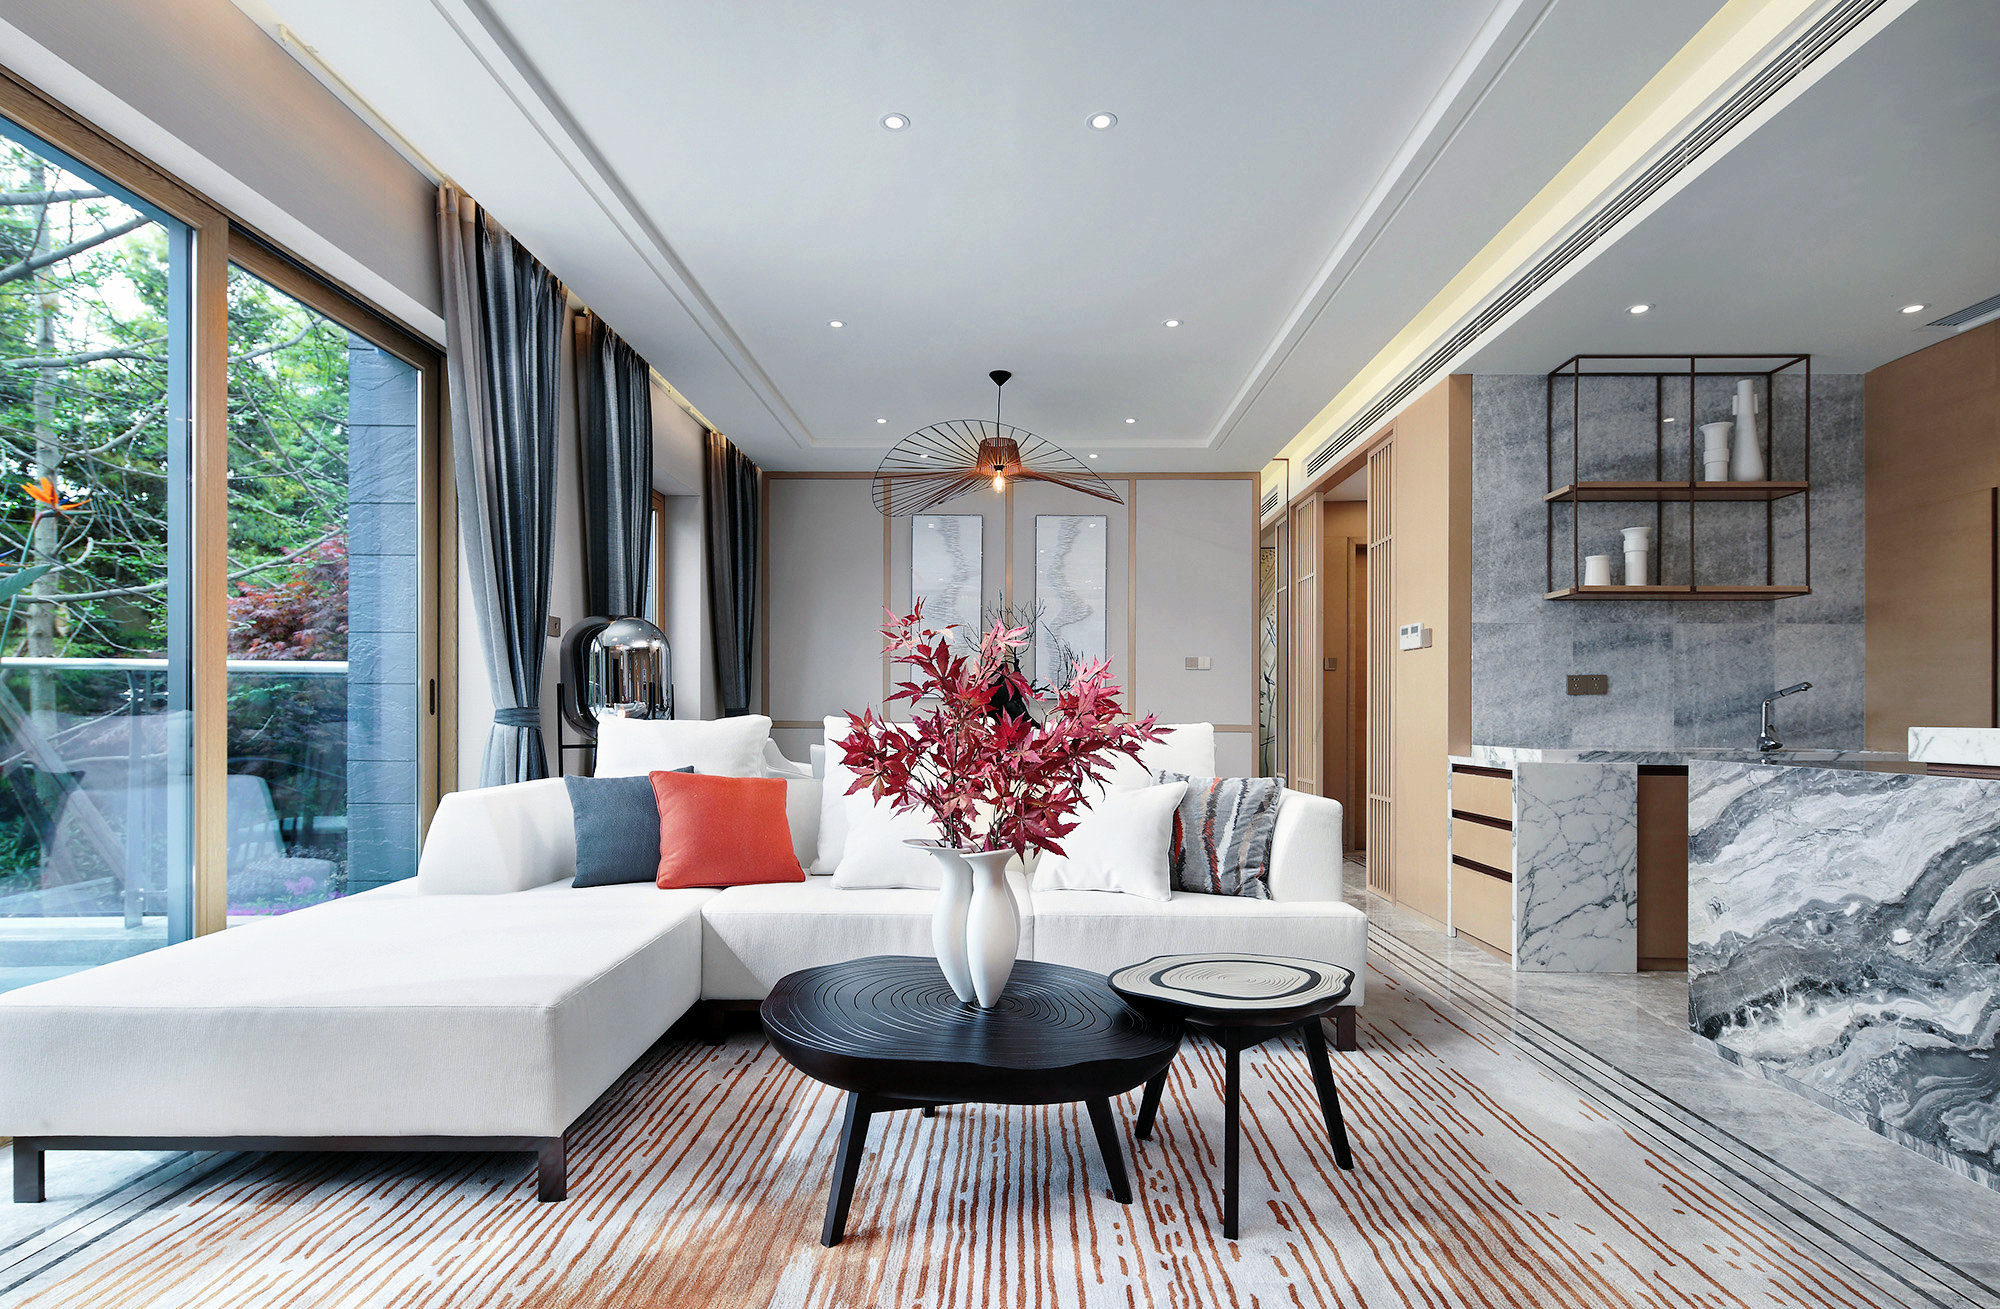 白色沙发自带质感气质，在高雅的客厅氛围中，释放出不张扬的静谧感。